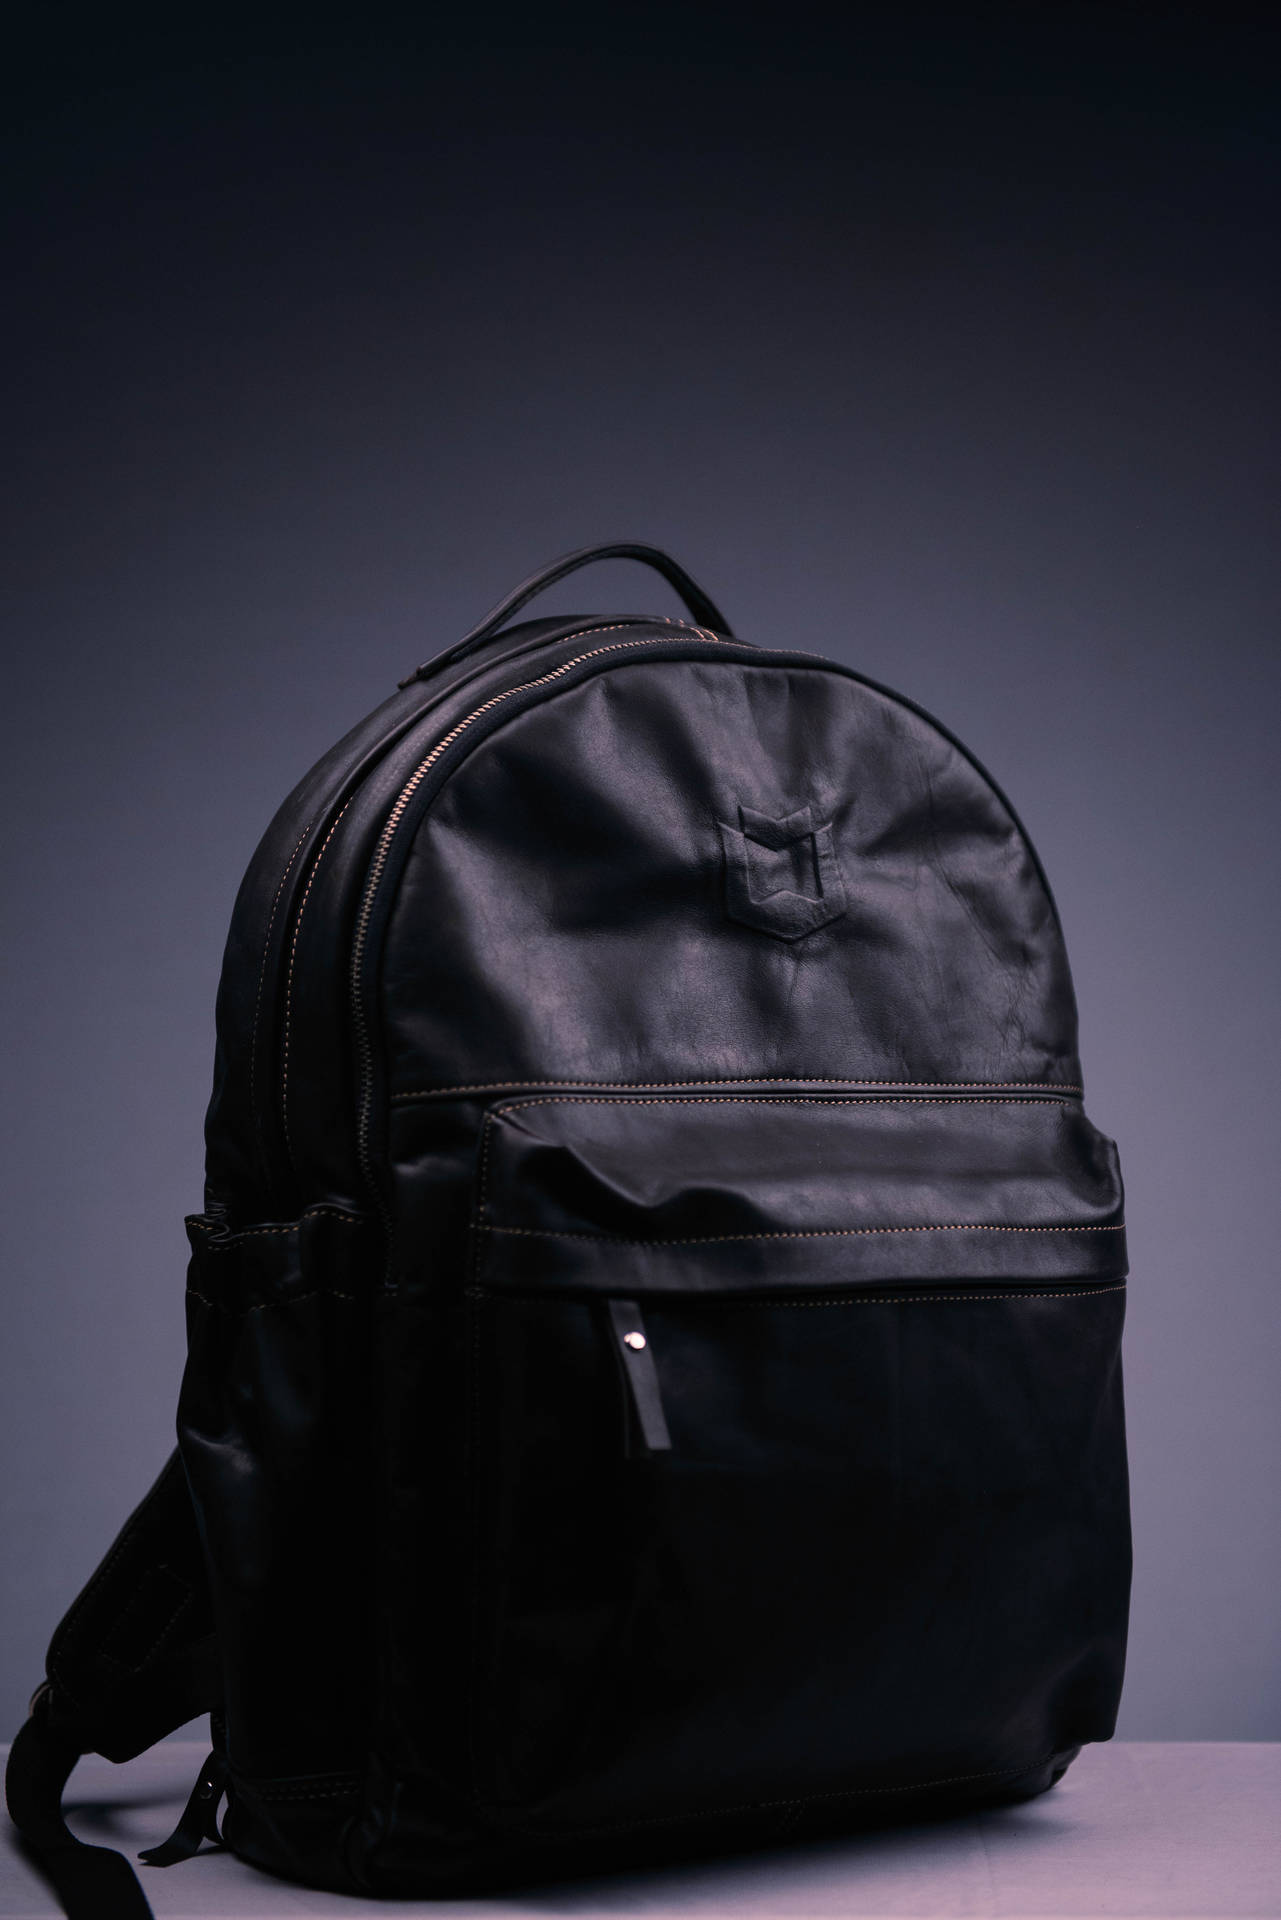 Simple Dark Aesthetic Black Backpack Background